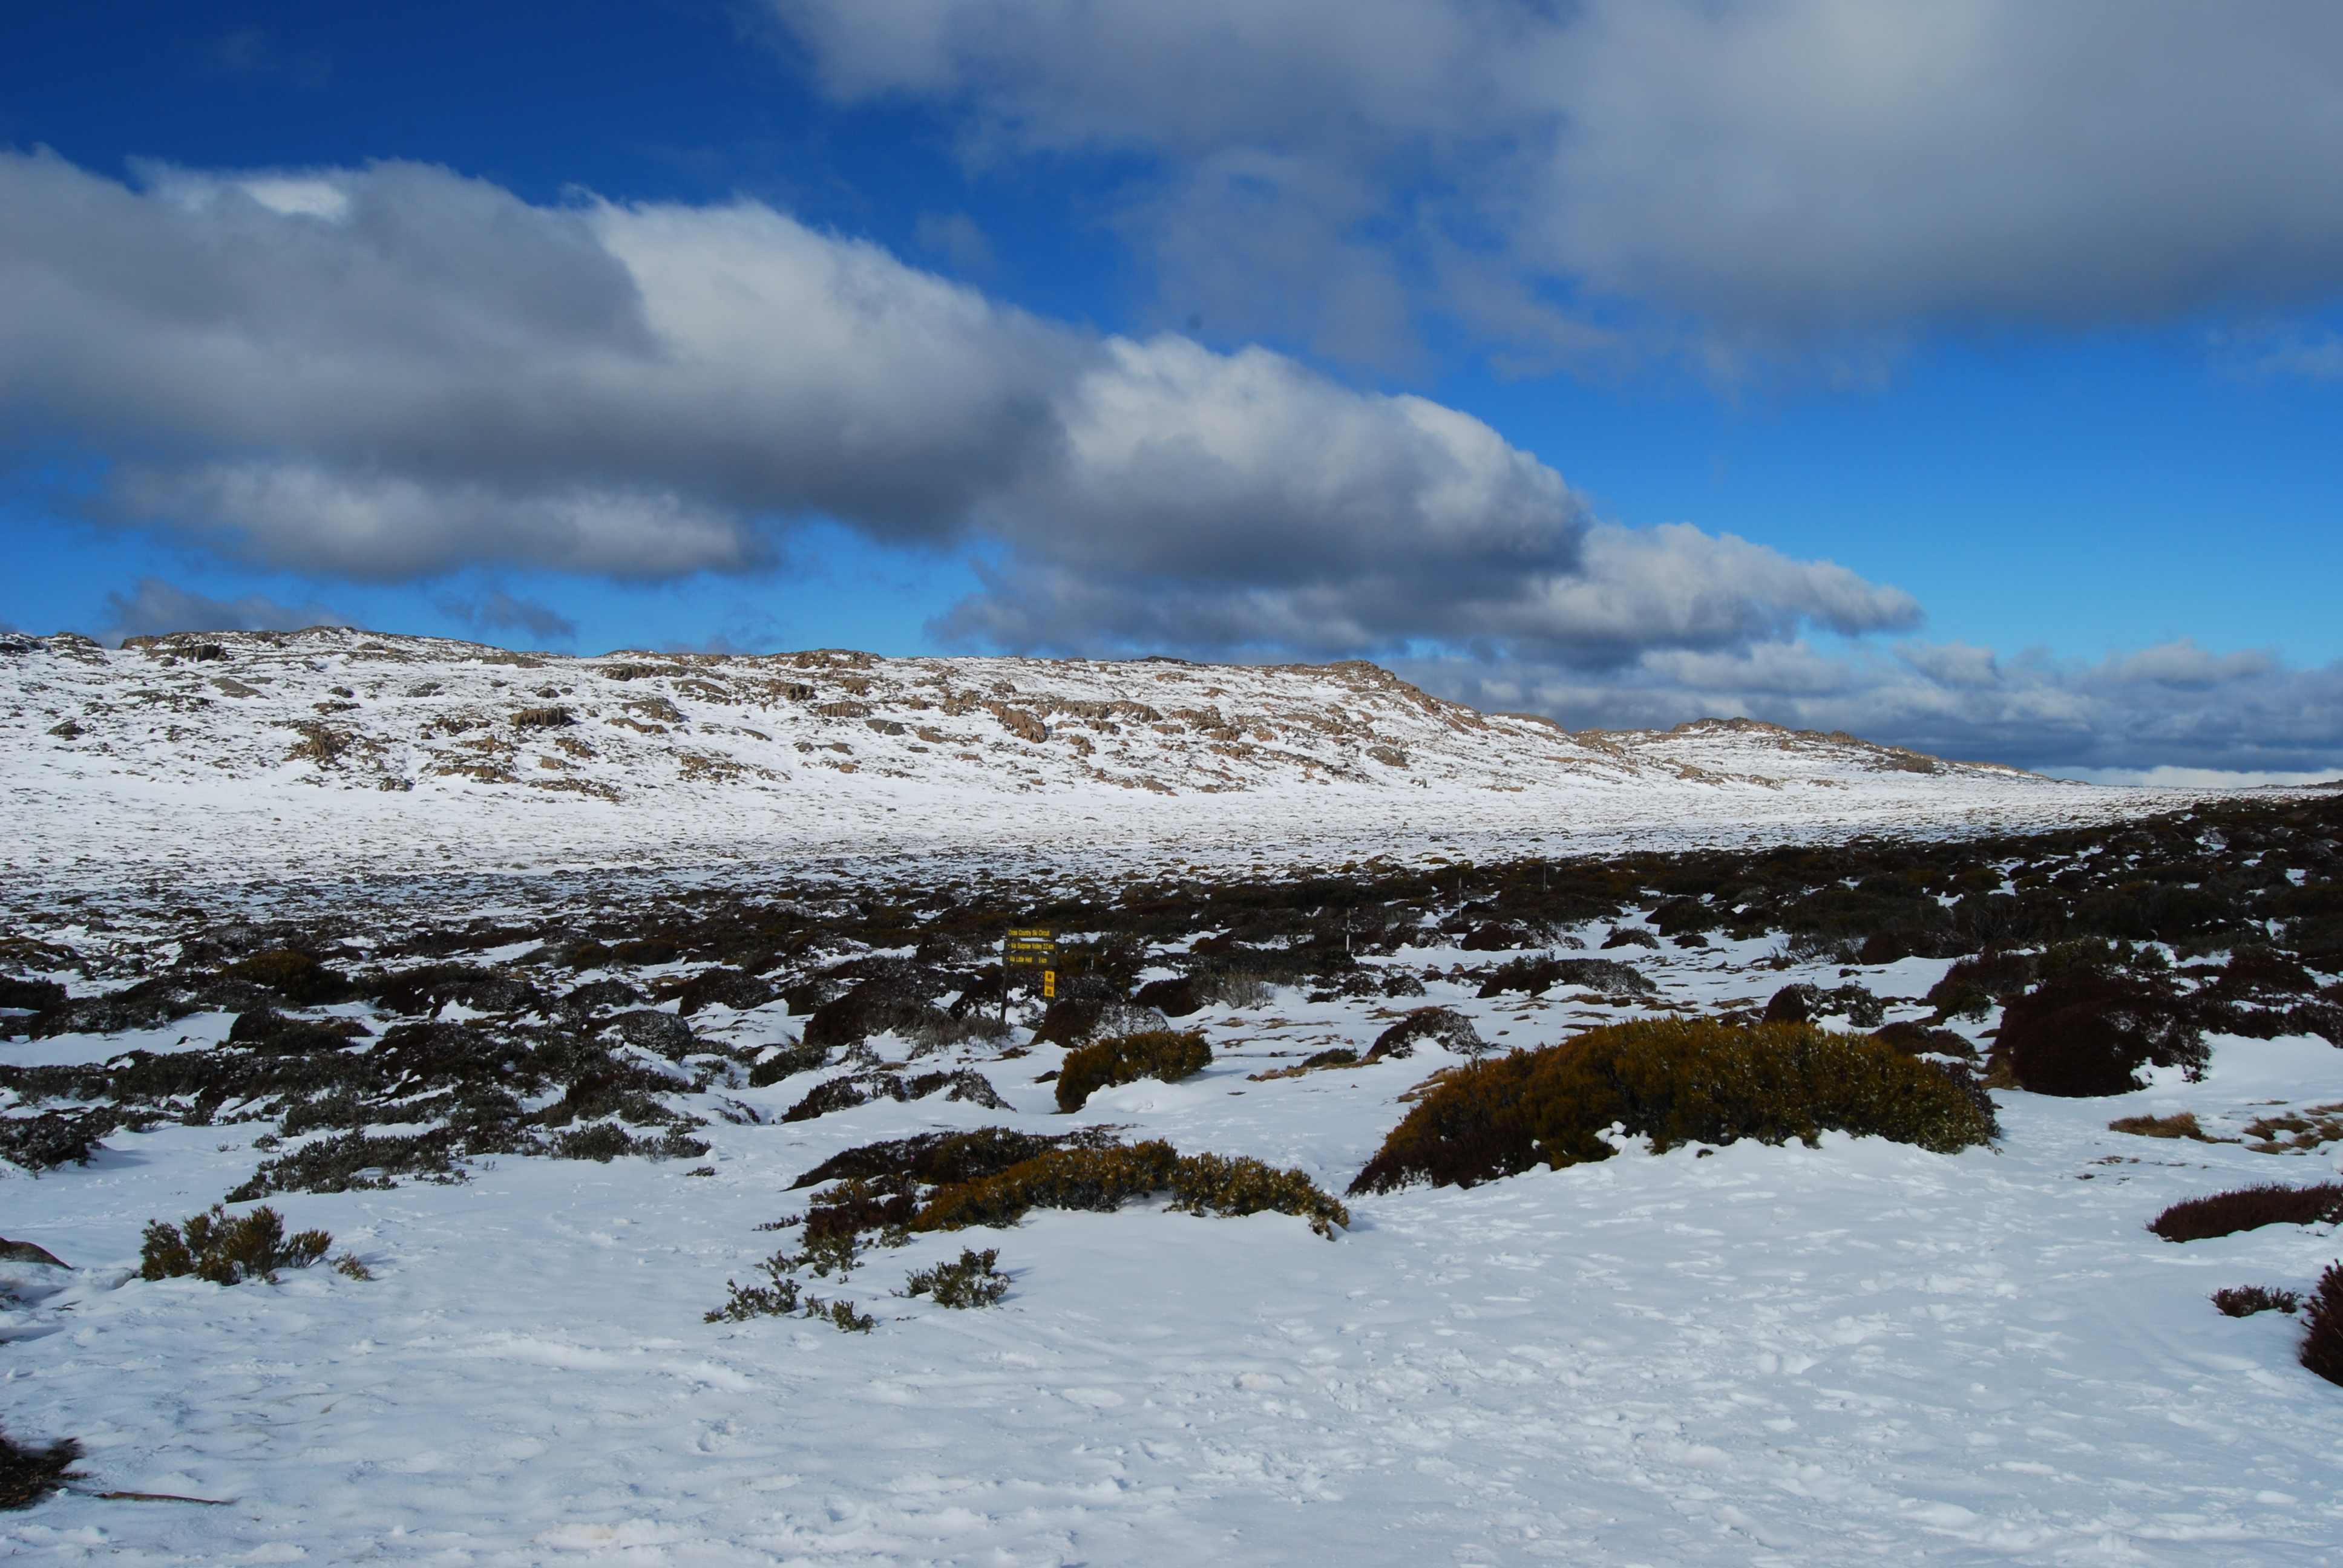 File:Ben Lomond snow fields.JPG - Wikimedia Commons